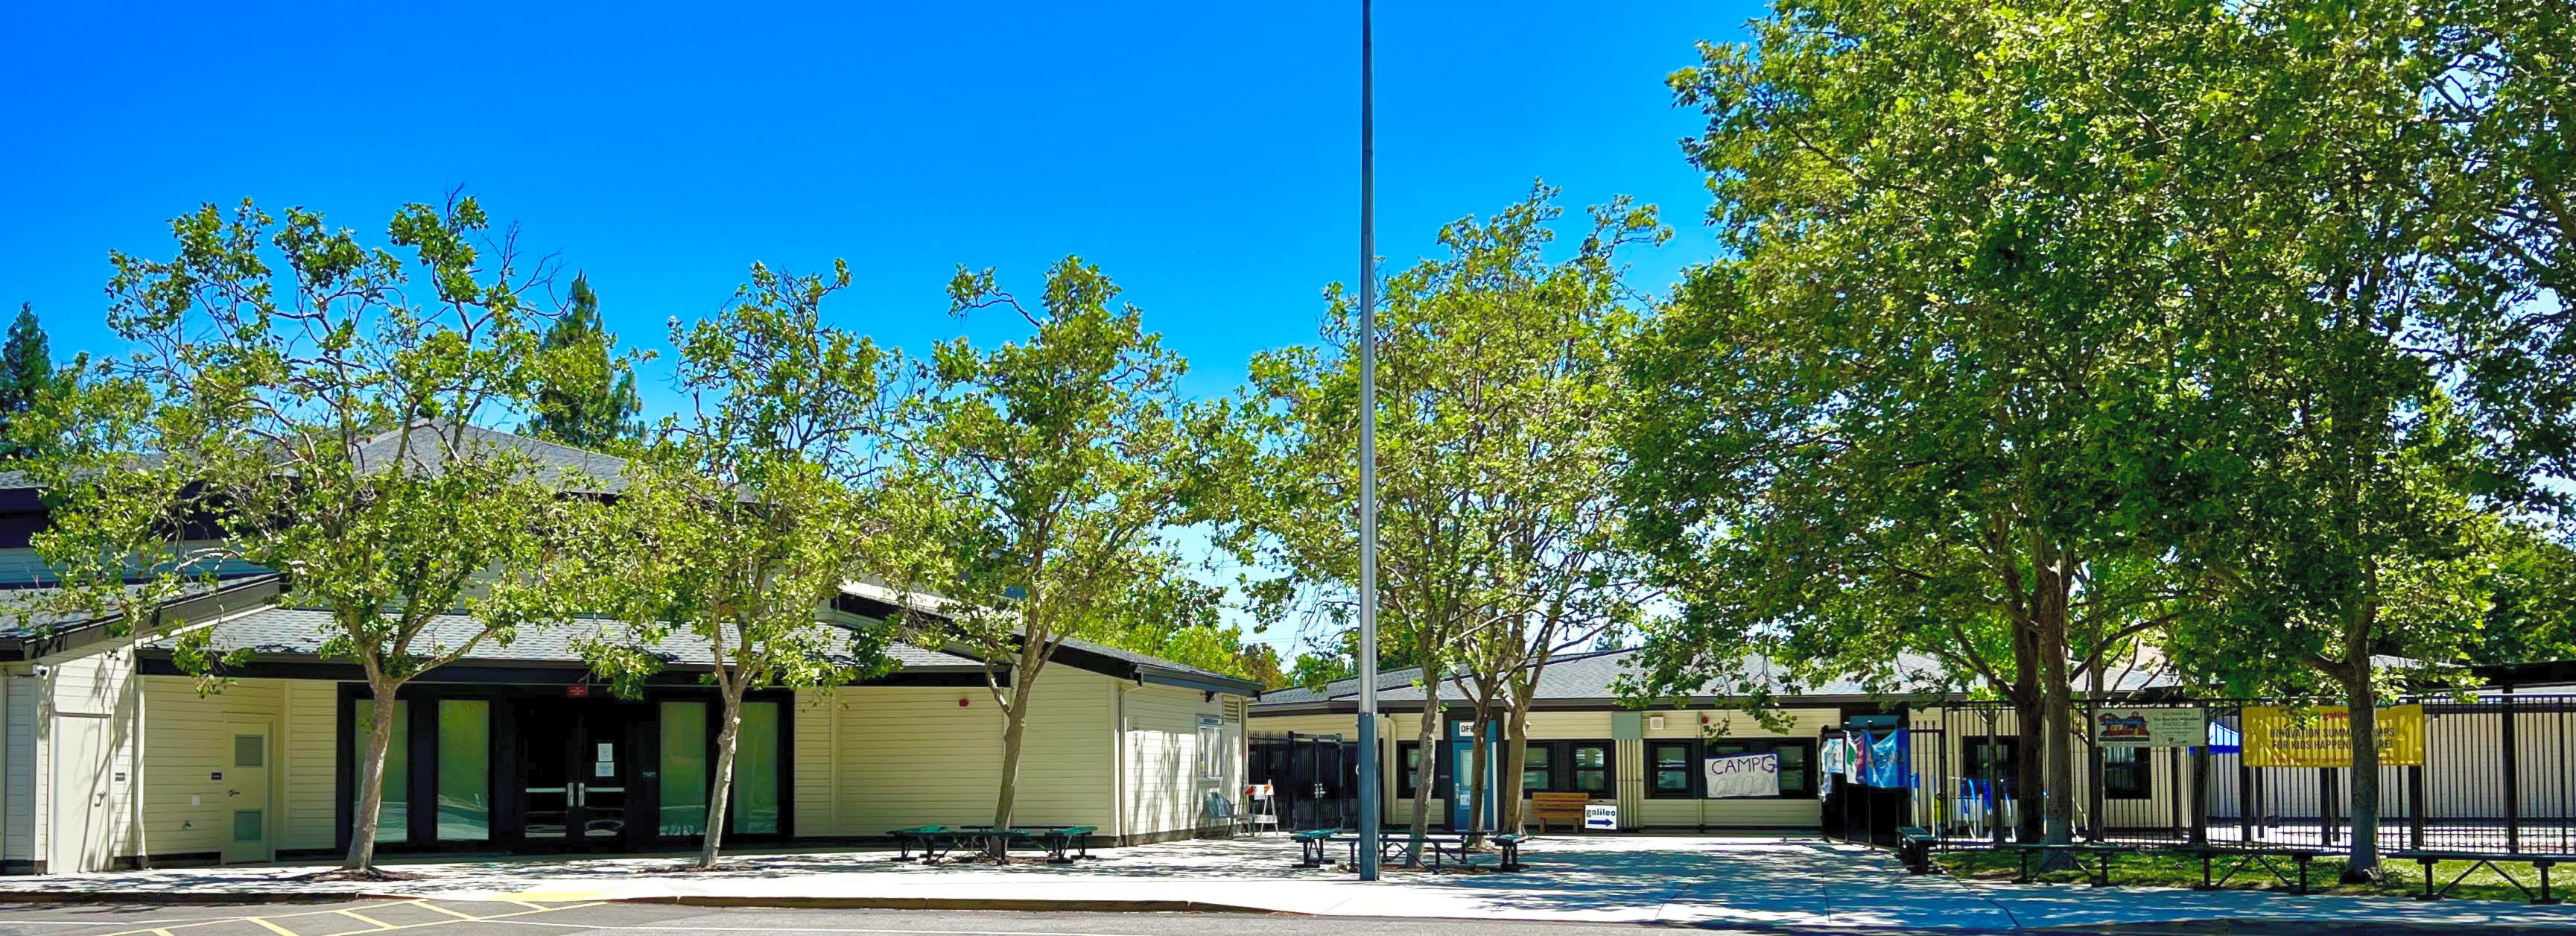 MonteVideo Elementary School